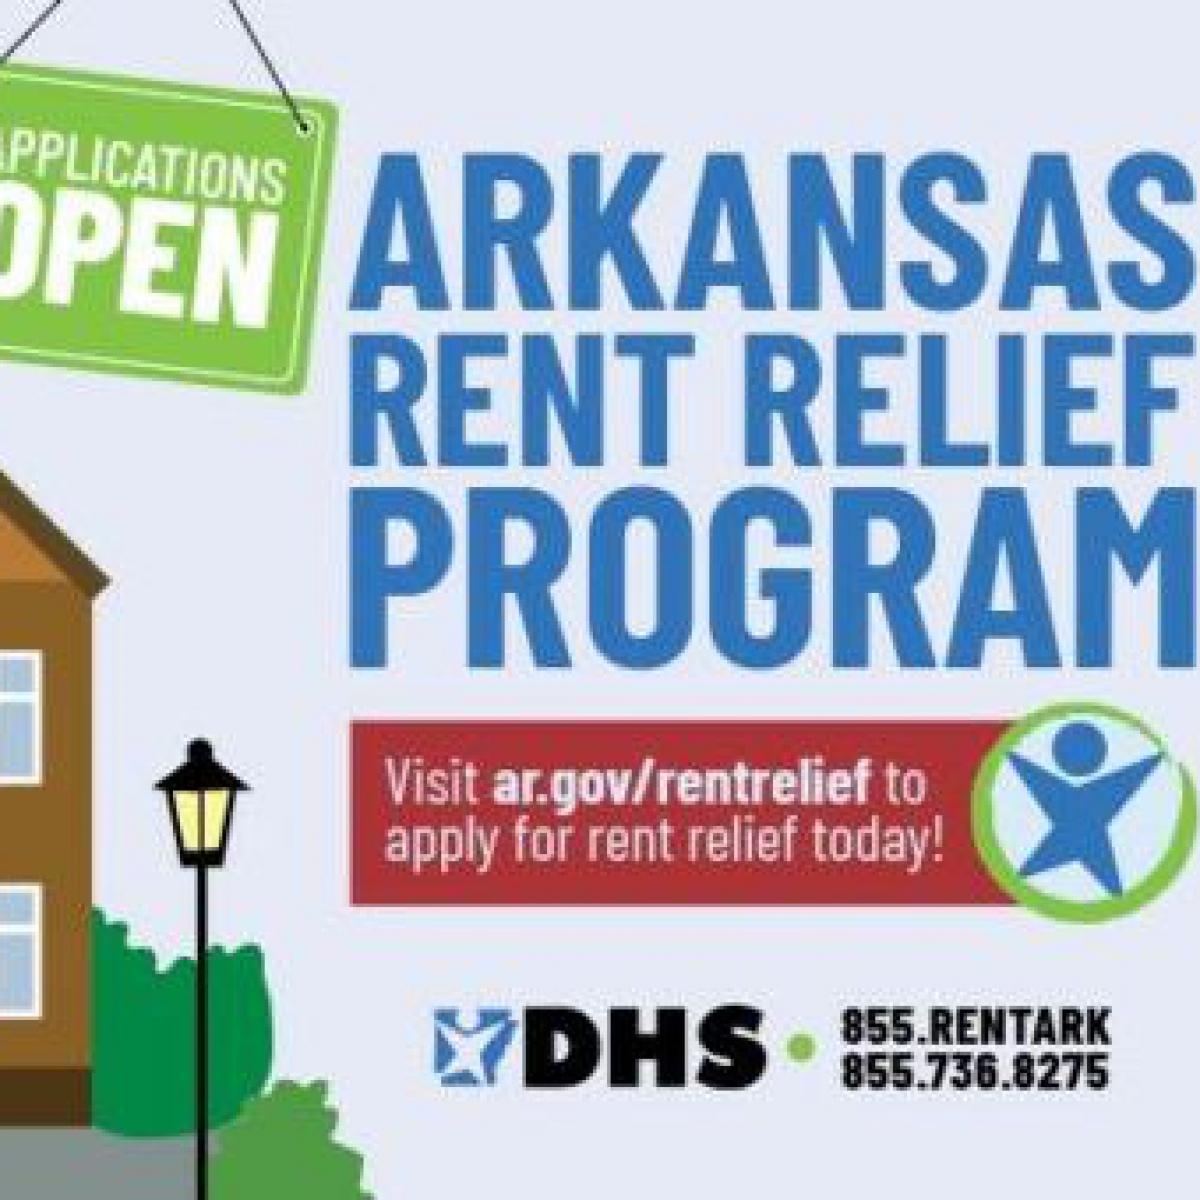 The Arkansas Rent Relief Program